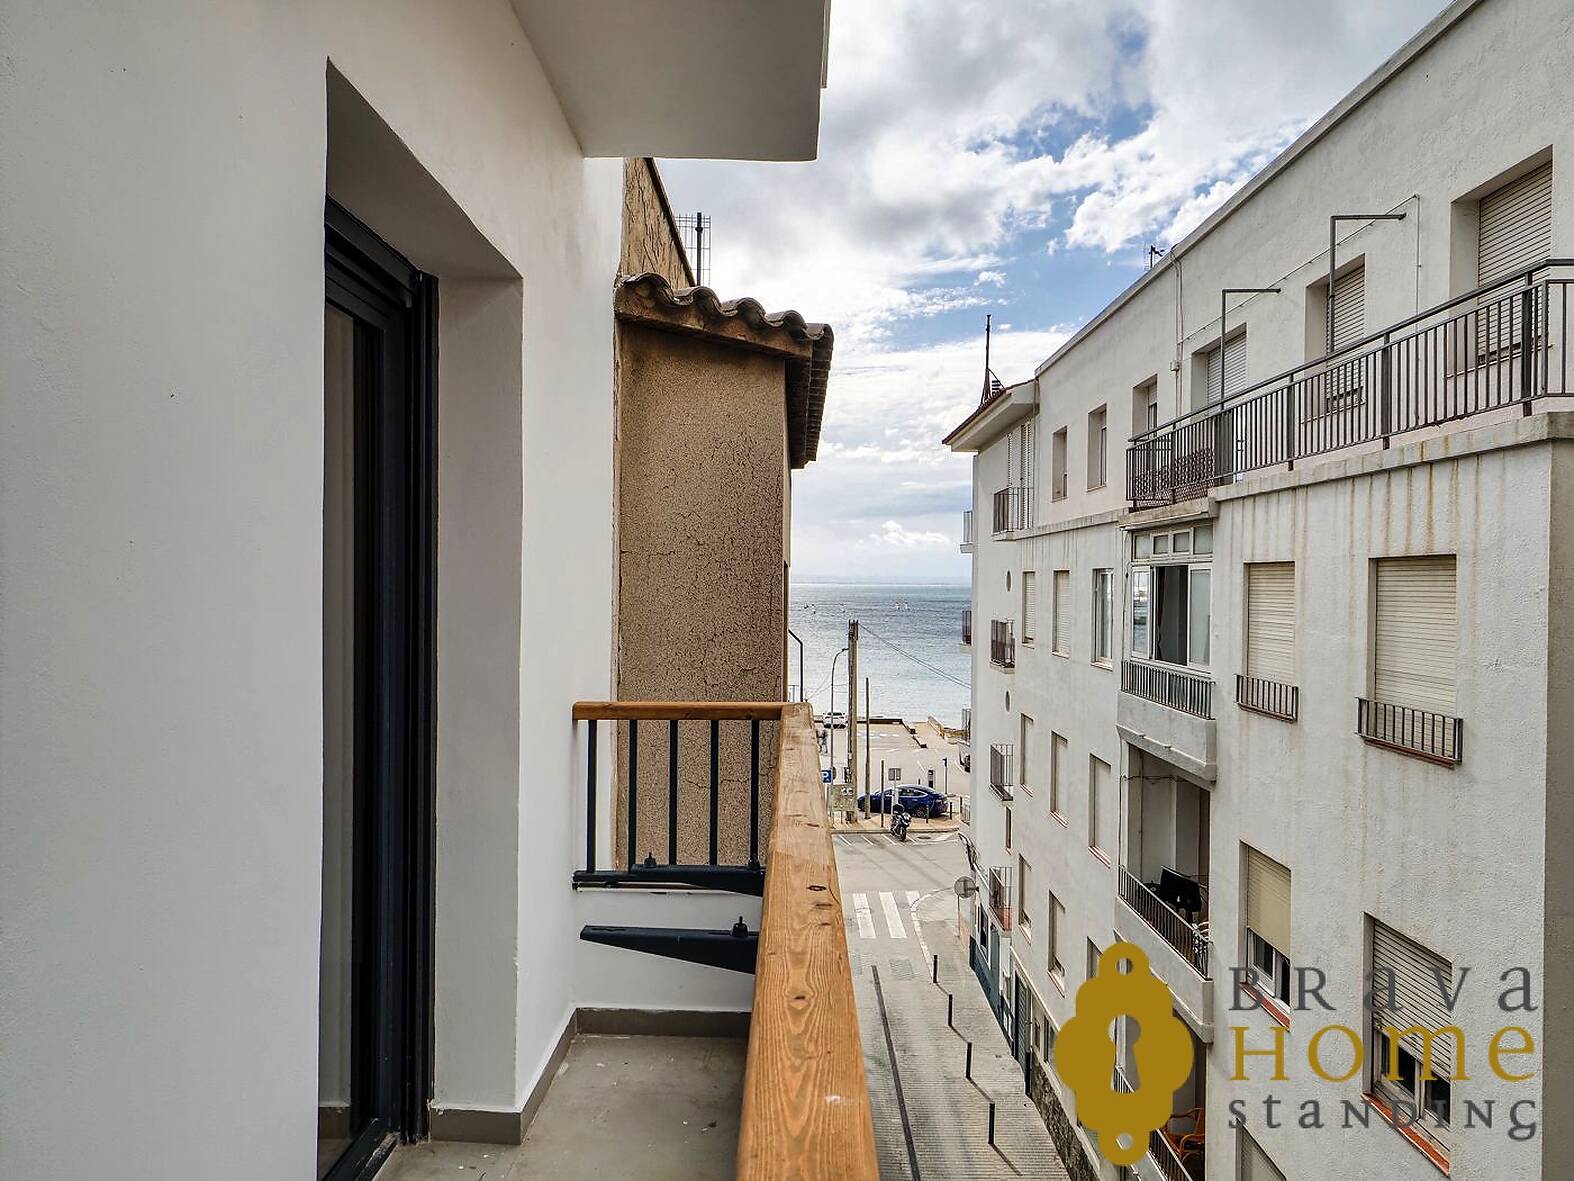 Apartament nou a prop de la platja en el centre de Roses - Costa Brava